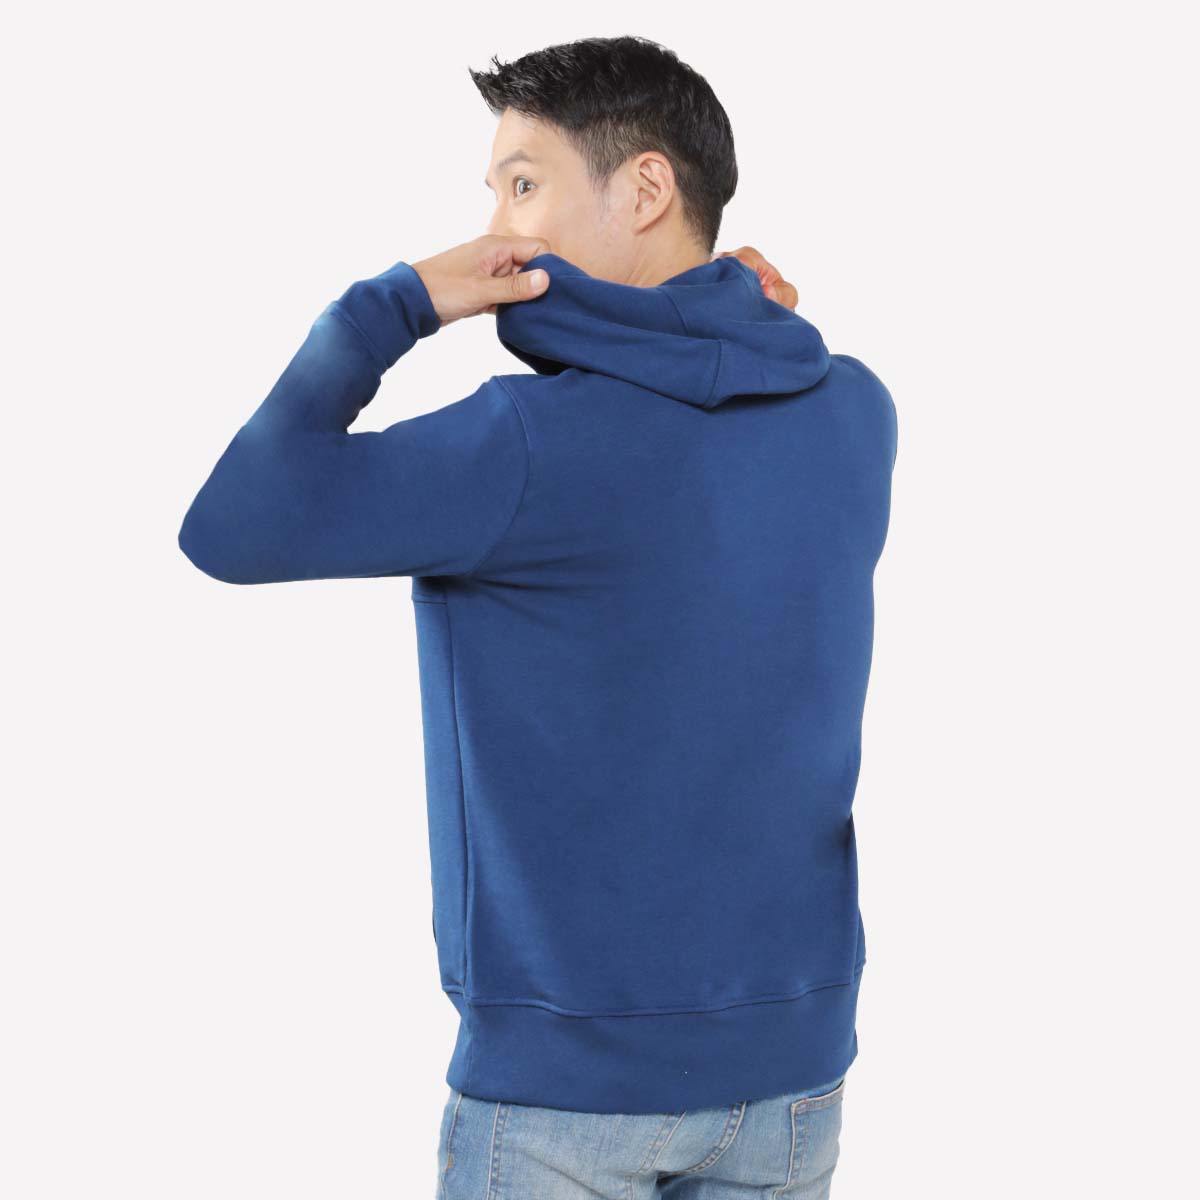 Juaraga Sweater Hoodie - JR Solid - Navy